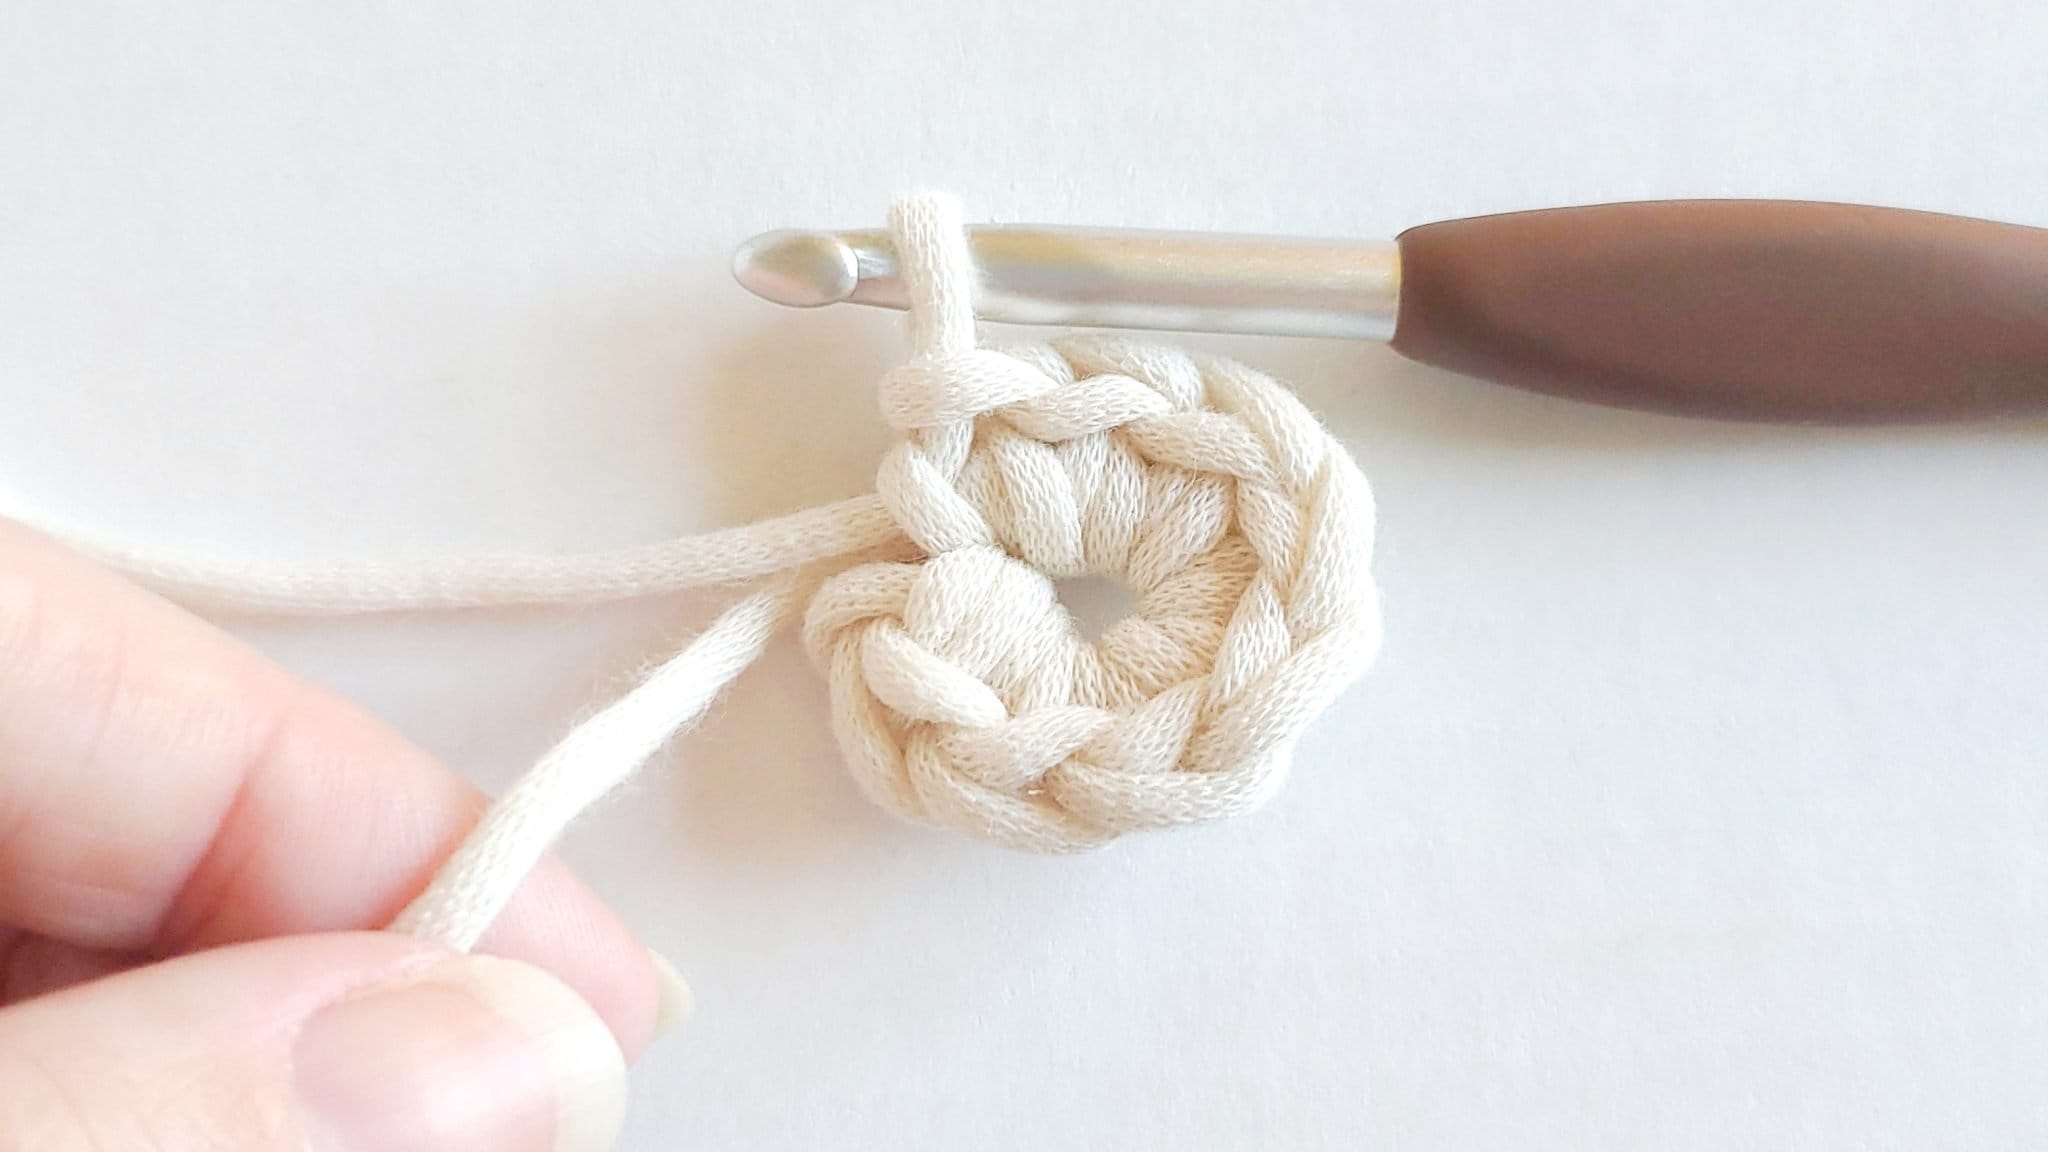  8 Pieces Crochet Ring Crochet Loop Ring Crochet Ring